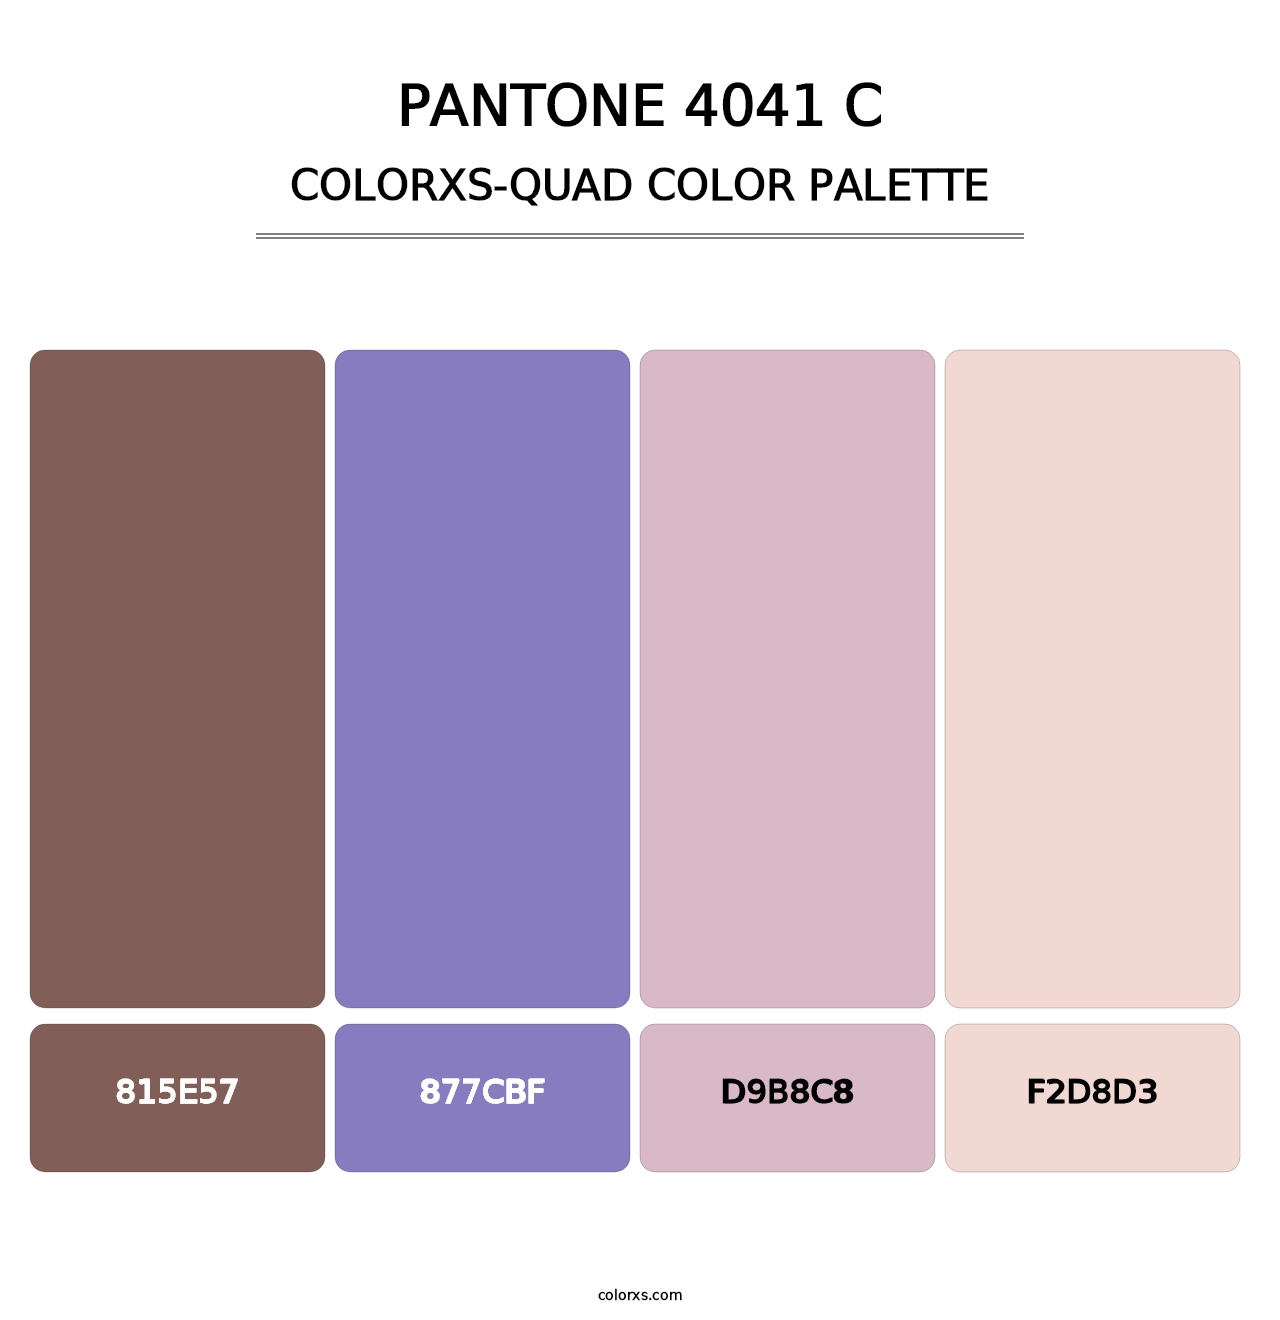 PANTONE 4041 C - Colorxs Quad Palette